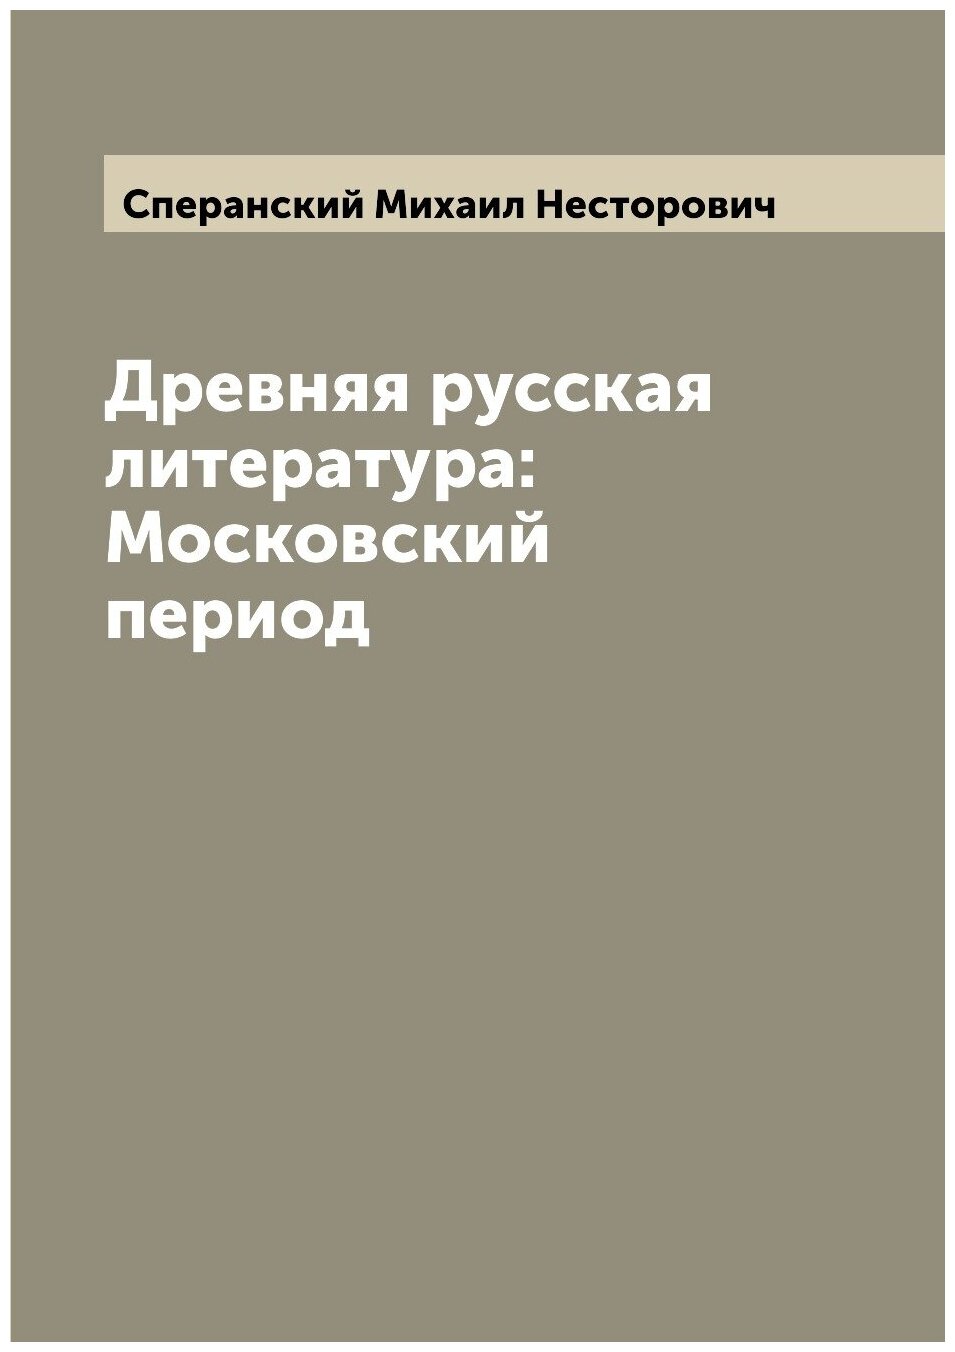 Древняя русская литература: Московский период